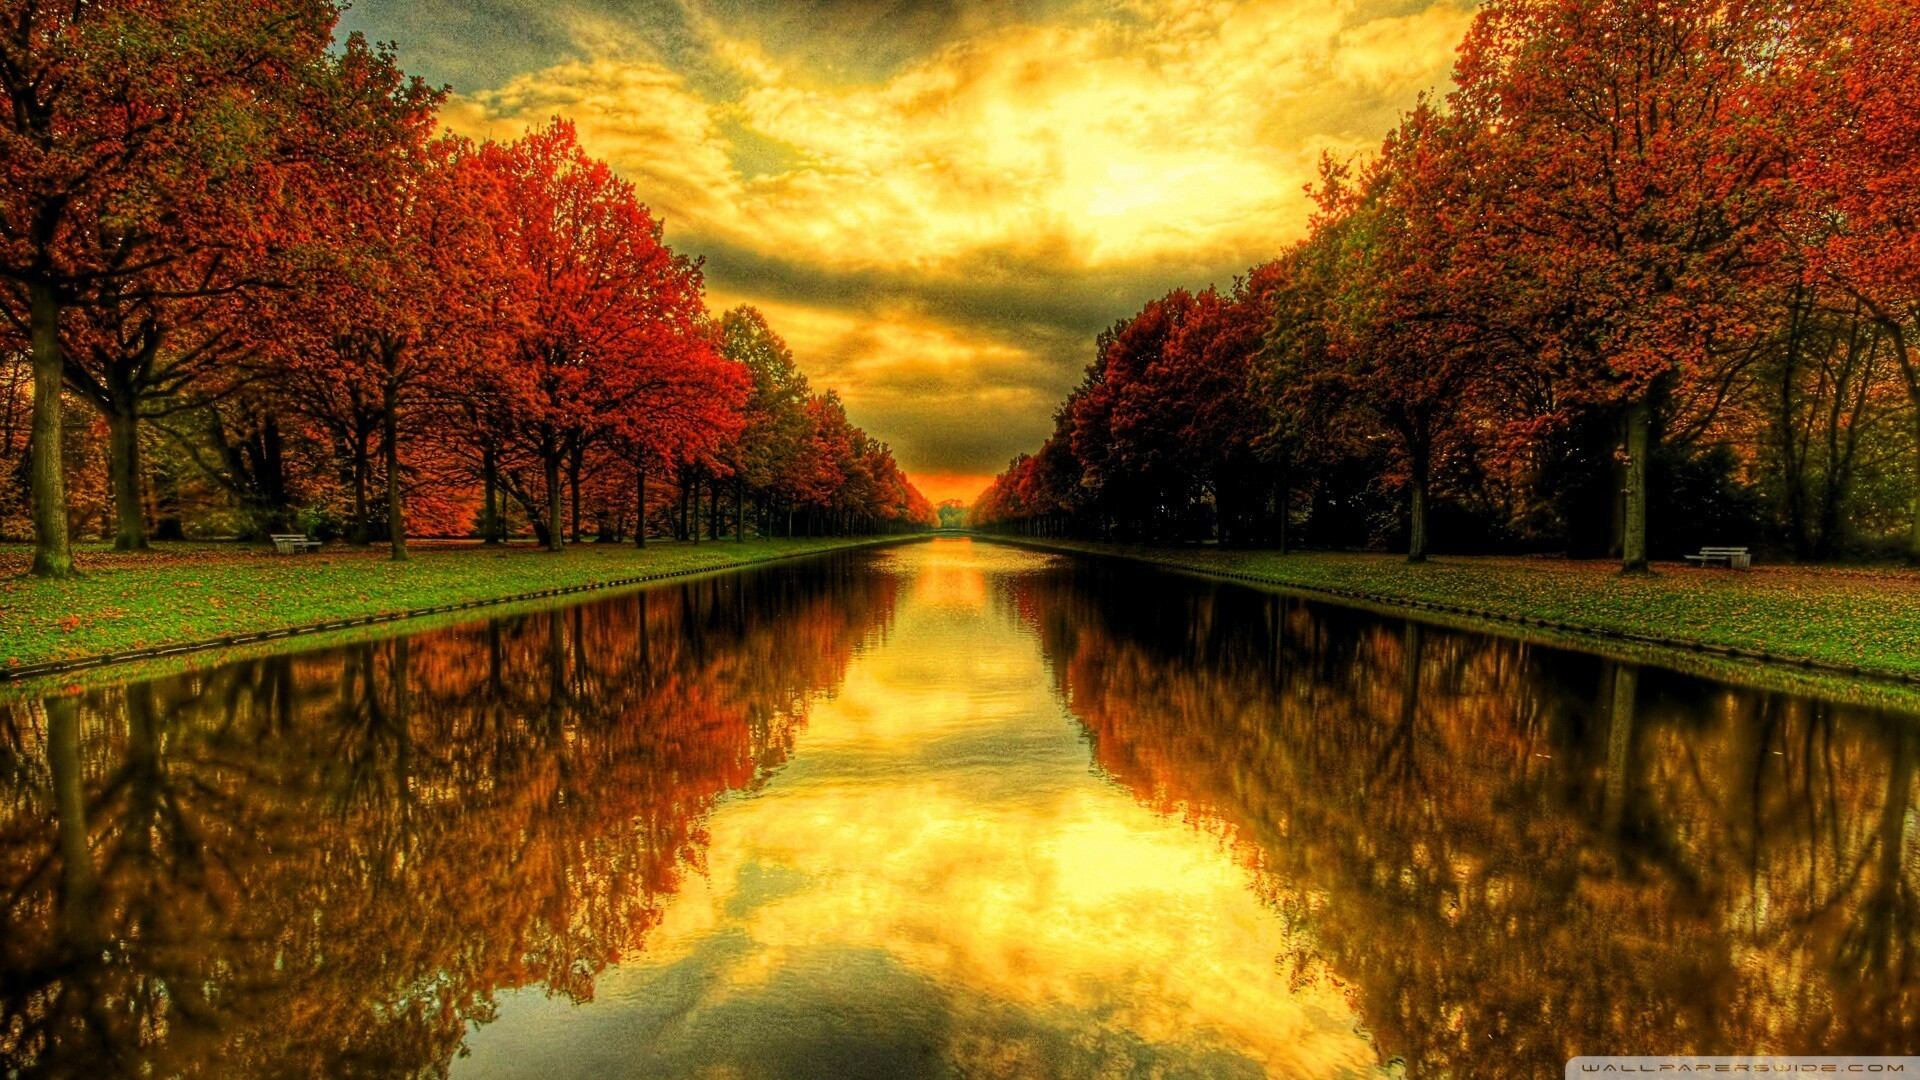 #autumn #leaves #sunset #sun #sky #fall #leaves #wallpaper